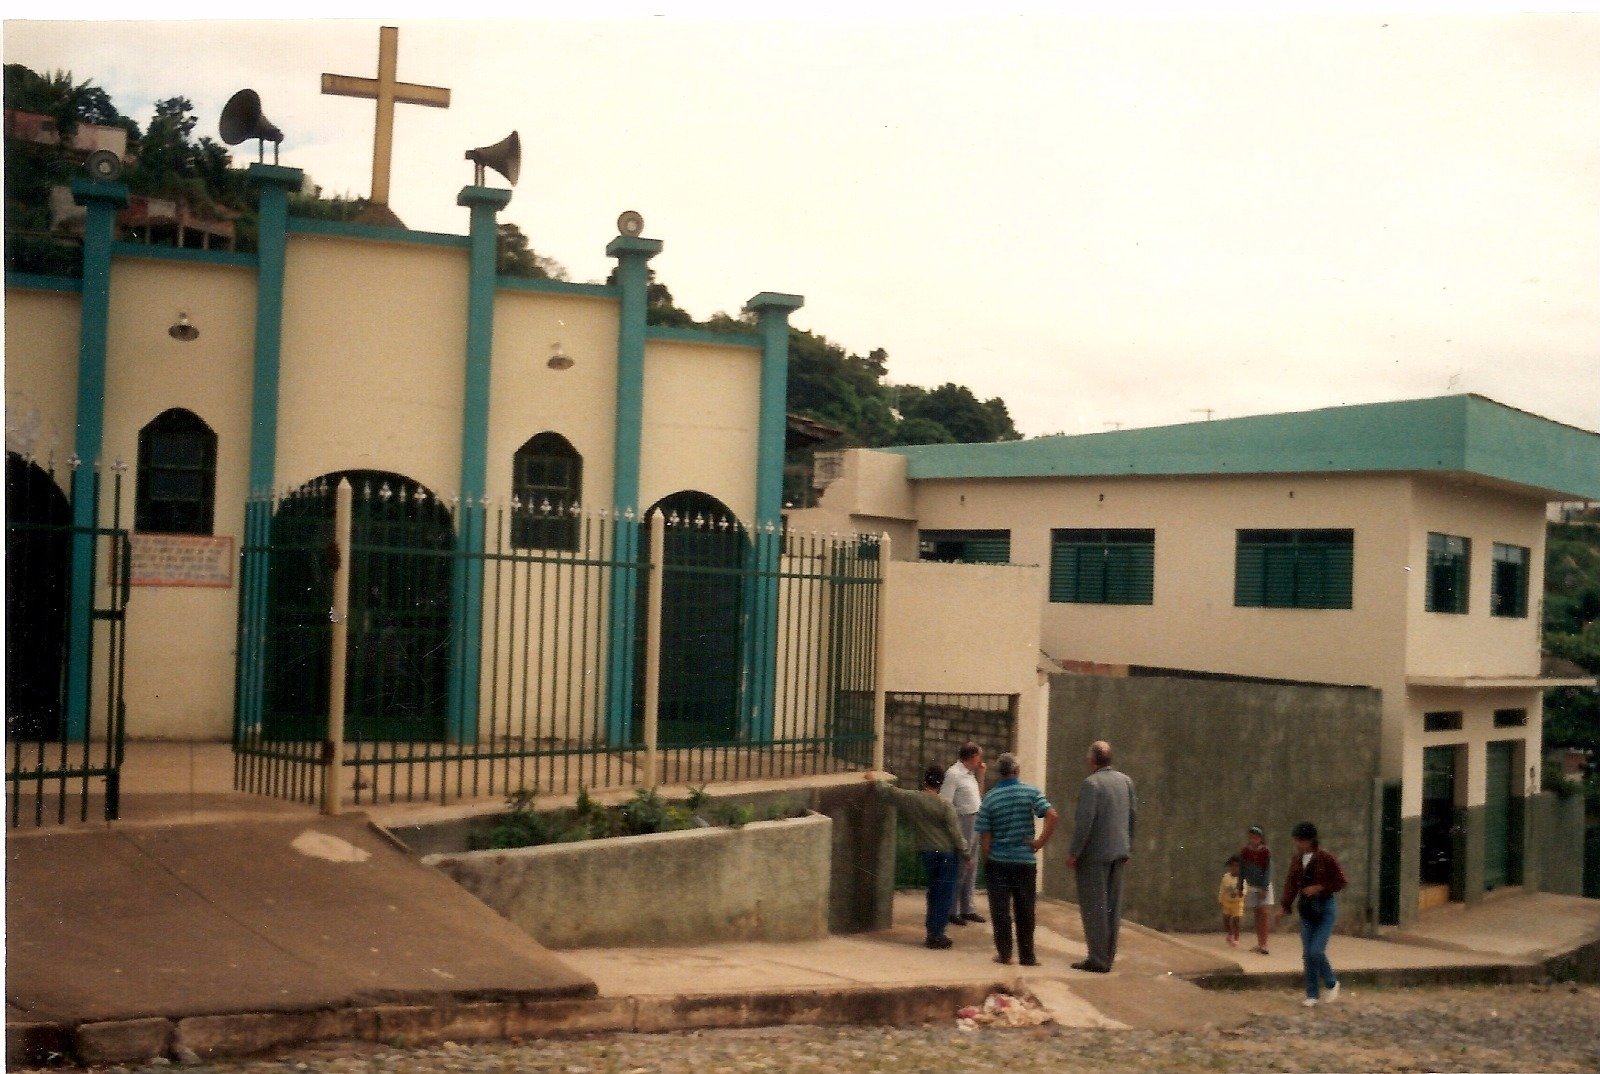 Nossa História nas Comunidades: Paróquia São Sebastião, General Carneiro, Sabará